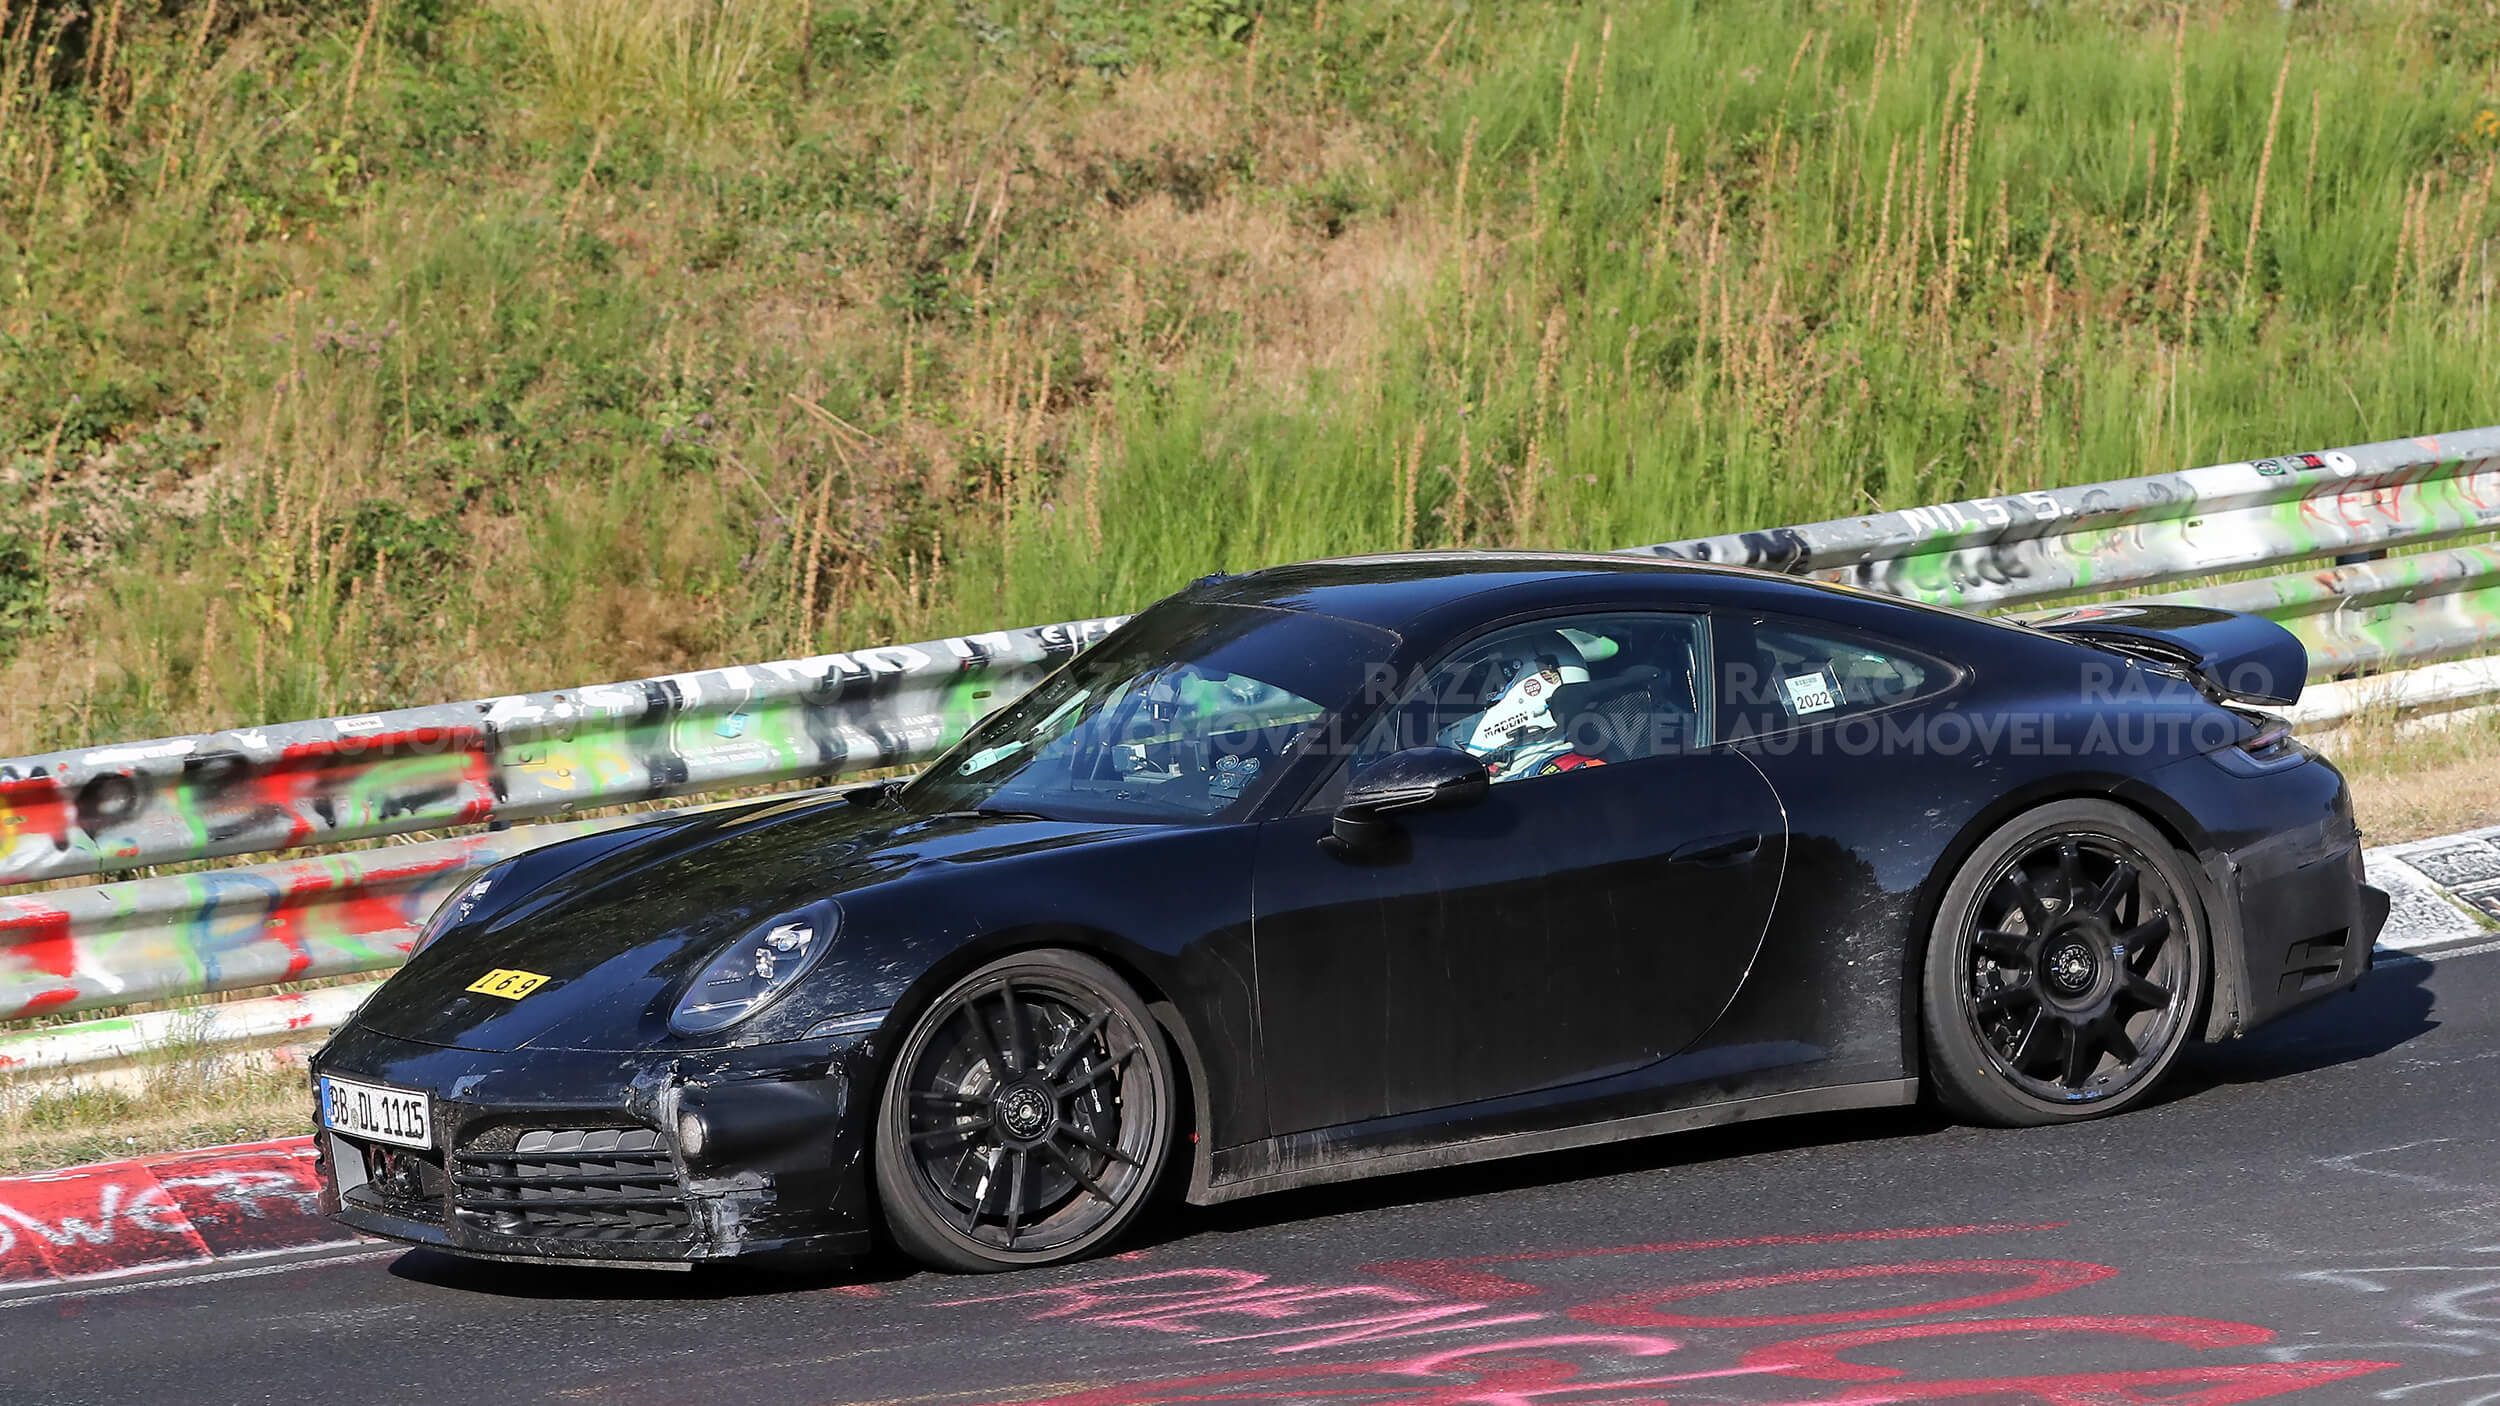 Porsche 911 GTS hibrido fotos-espia vista dianteira